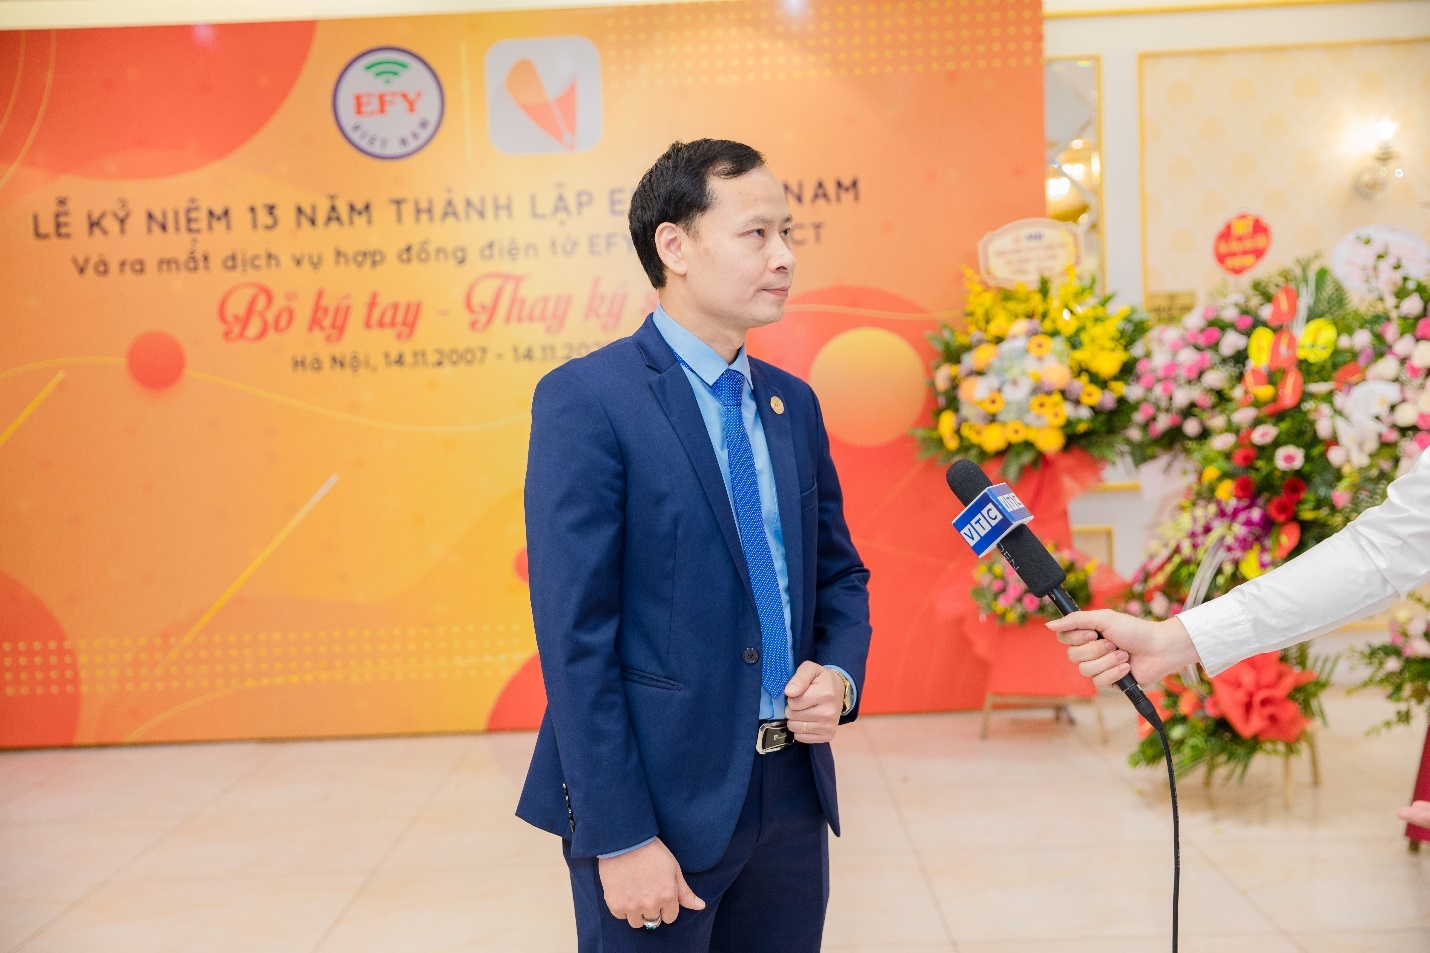 Công ty Cổ phần Công nghệ Tin học EFY Việt Nam